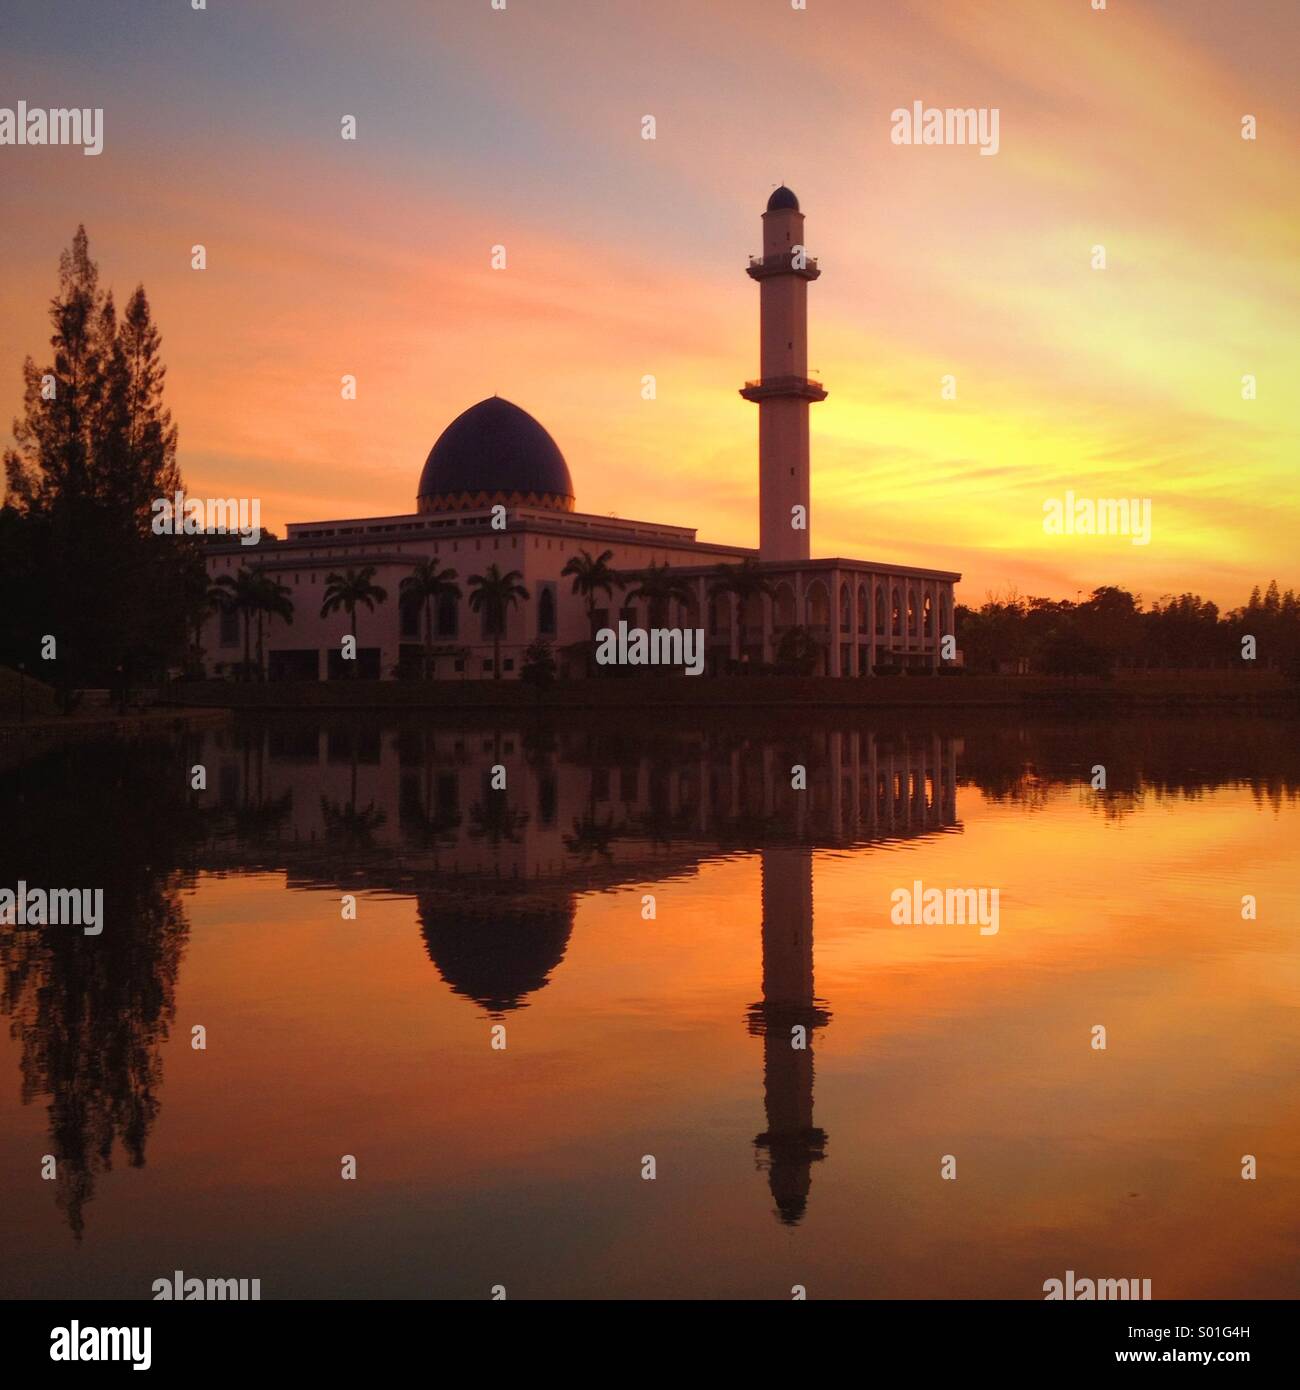 Le lever du soleil au bord du lac près d'une mosquée Banque D'Images